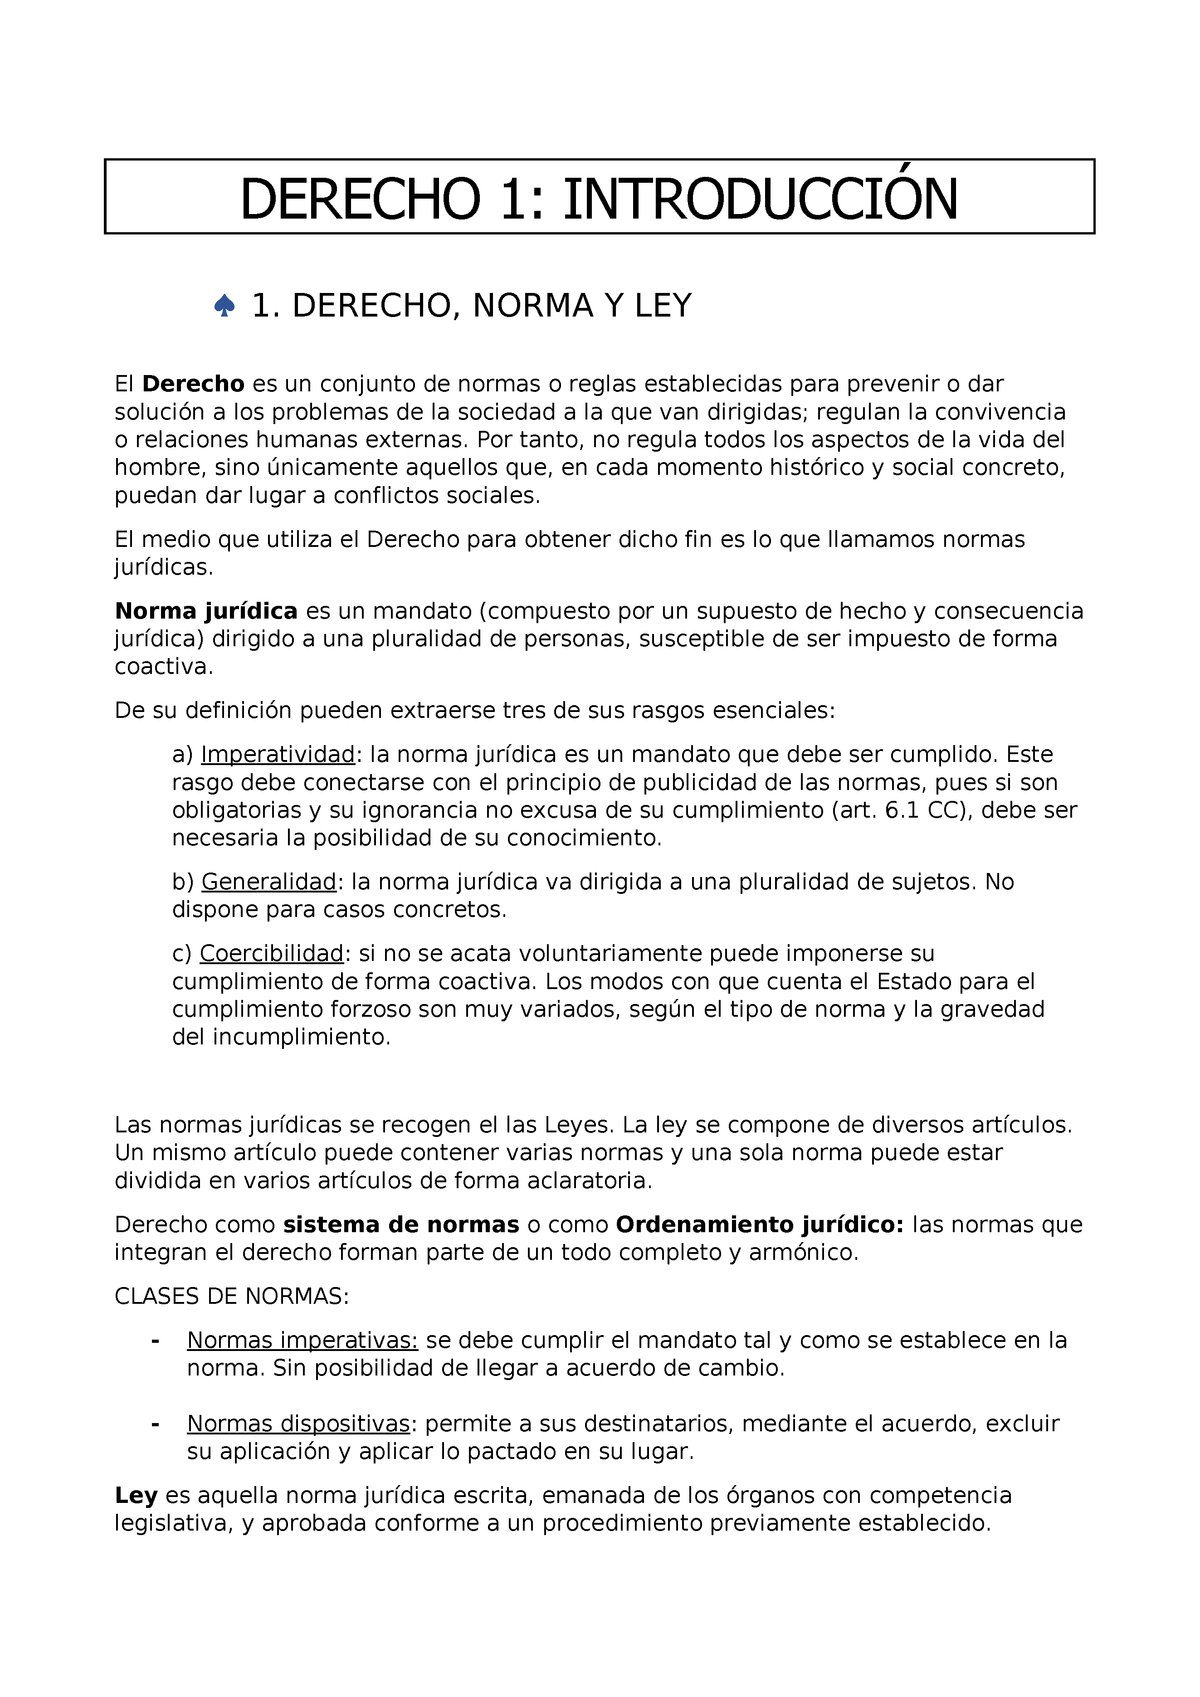 Derecho Tema 1 Universidad De Almeria 63101102 Ual Studocu